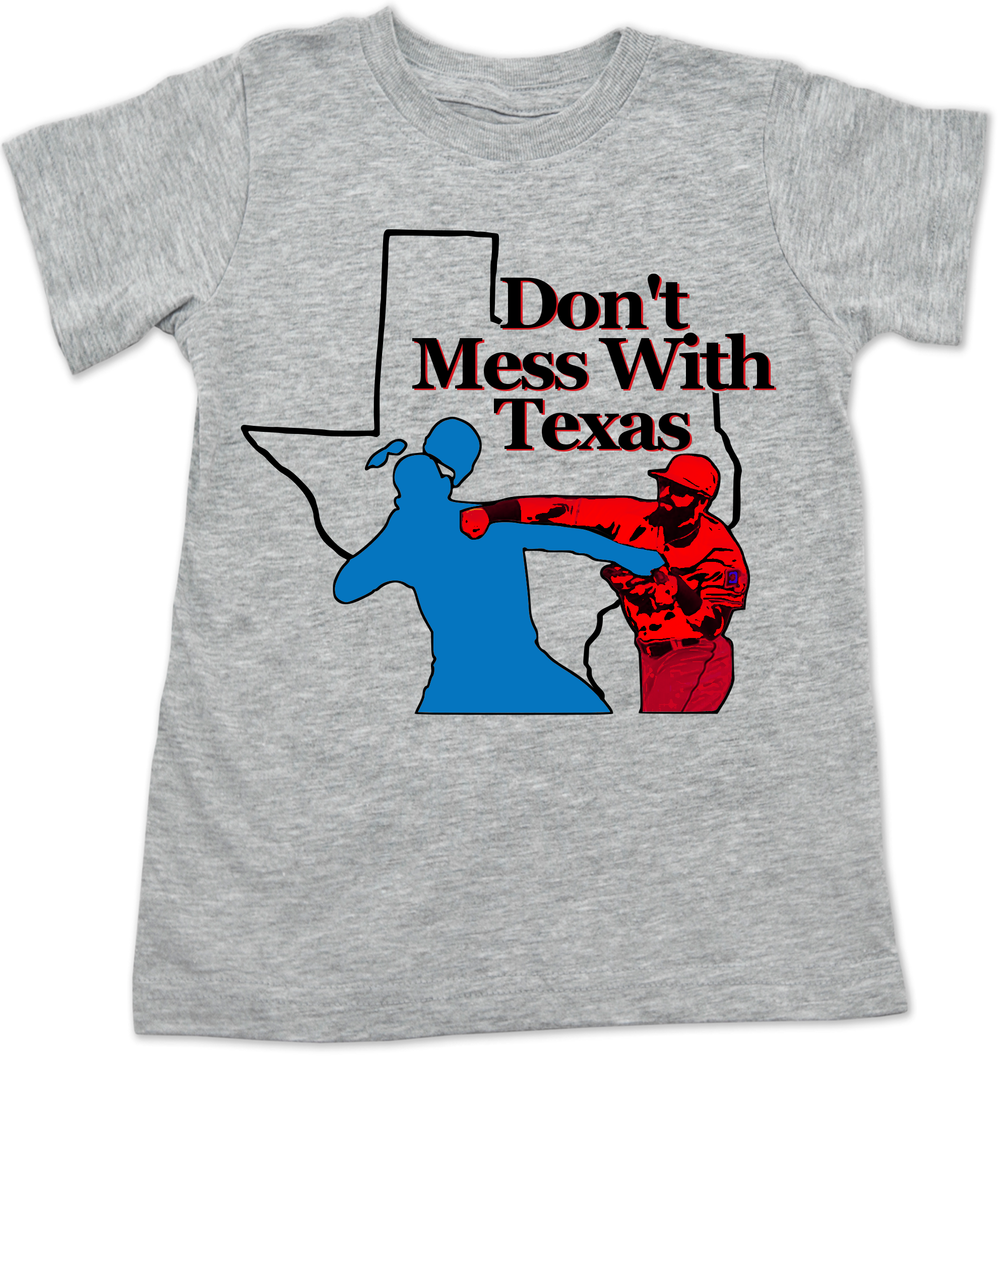 texas rangers cute shirts